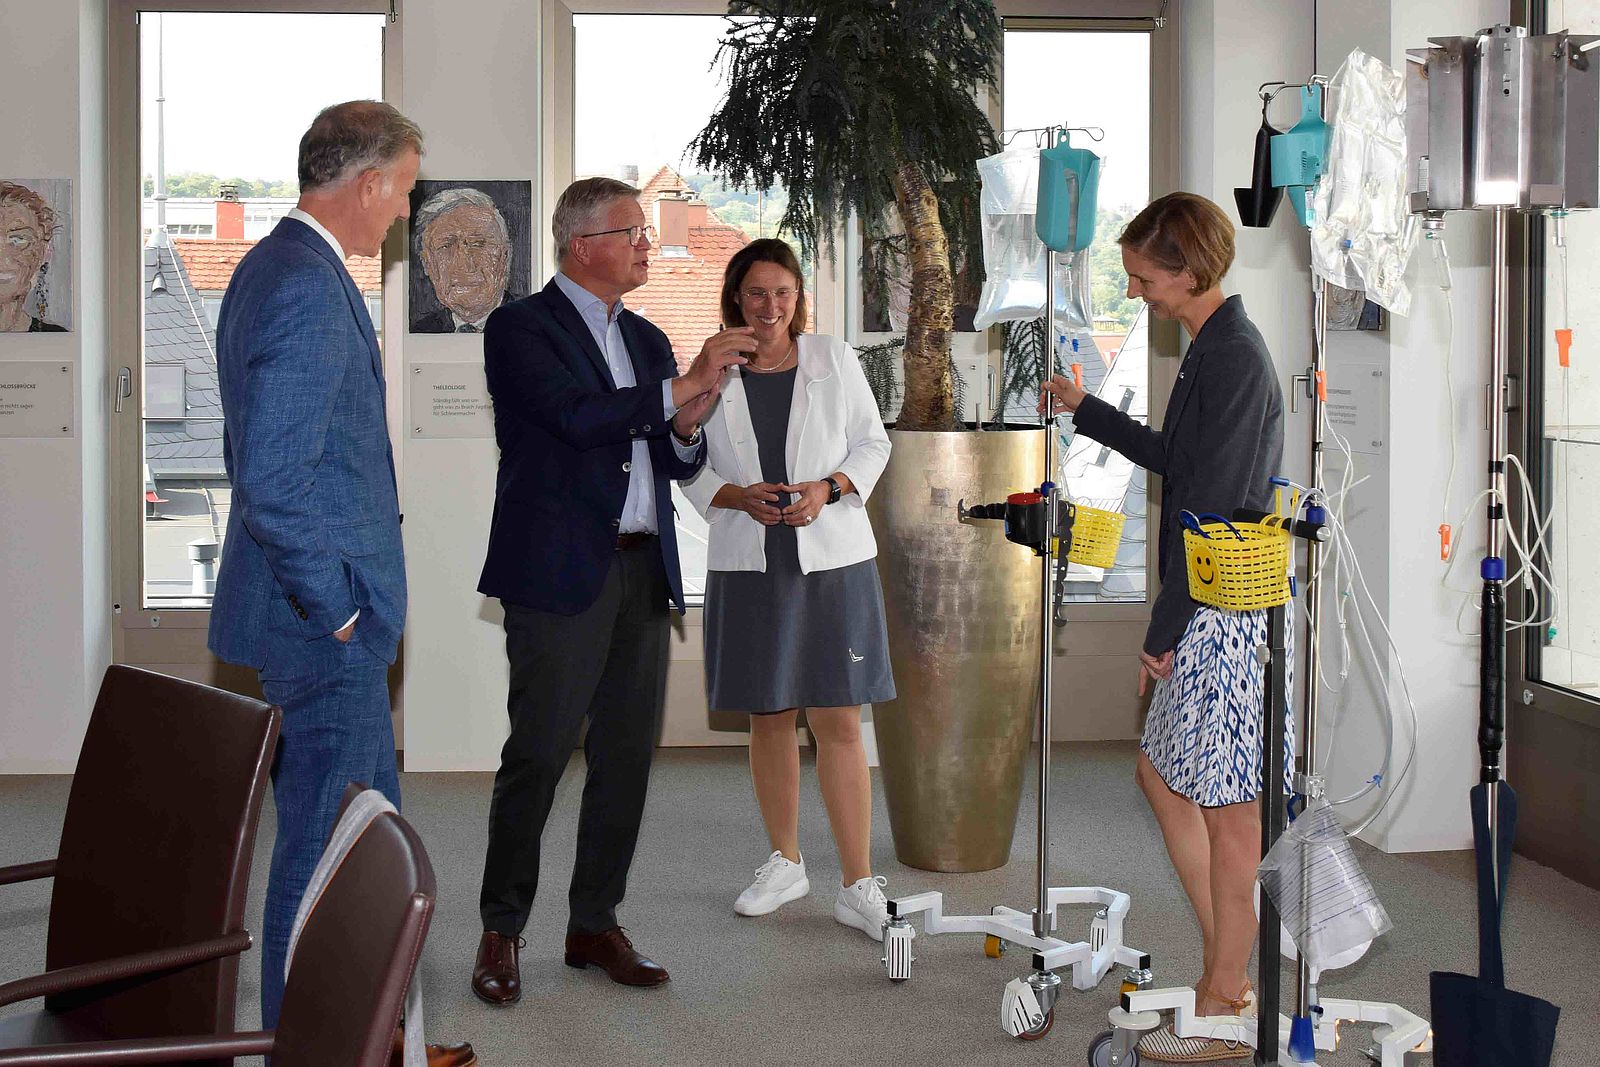 Heinz Eininger, Burkhard Wittmacher, Franziska Meinecke und Astrid Elsbernd reden über die Infusionsständer, die sich im Hintergrund befinden.